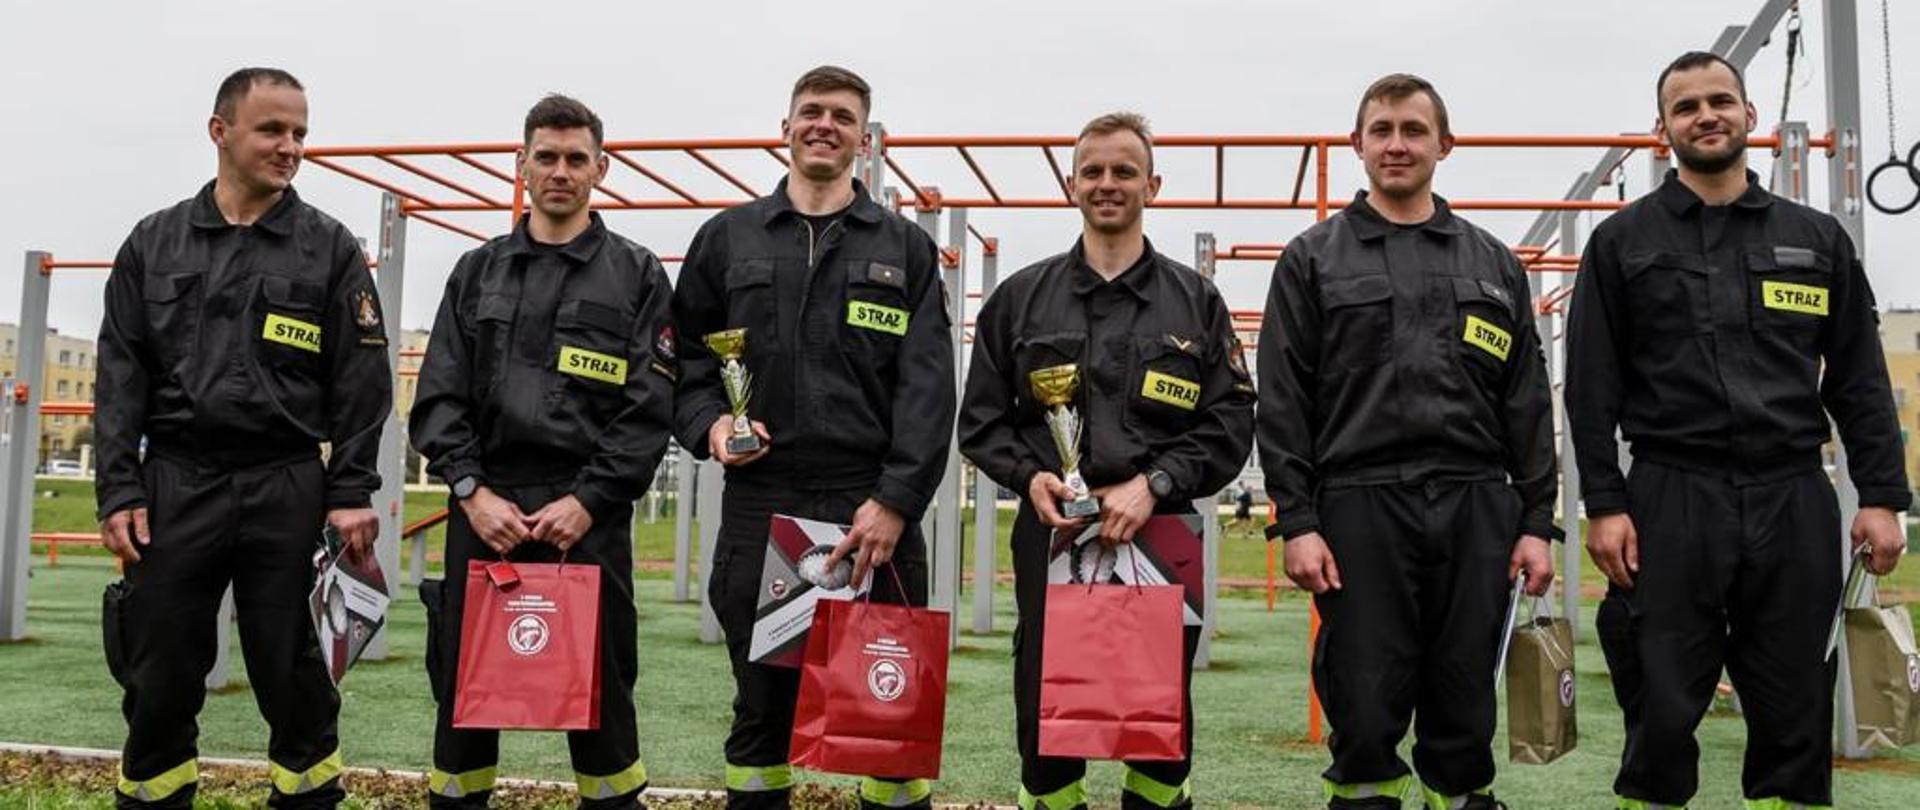 Sześciu strażaków stoi na boisku trawiastym, w rękach trzymają nagrody za udział w imprezie.